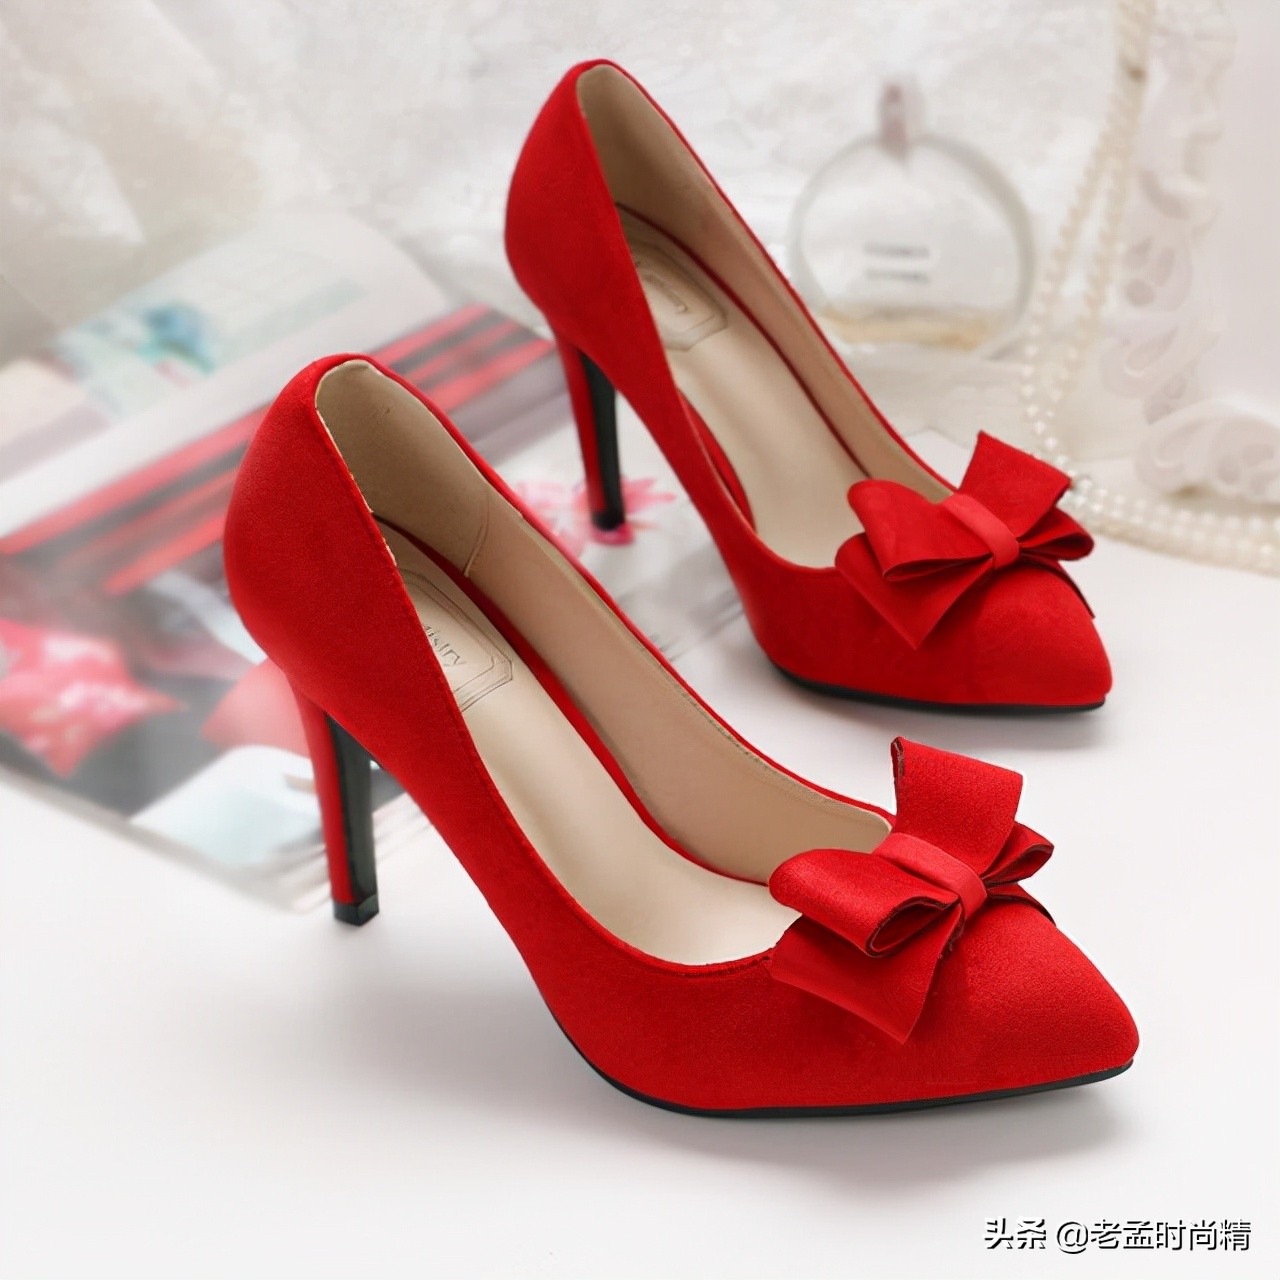 惊艳全场的红色高跟鞋，绽放优雅女人的矜持